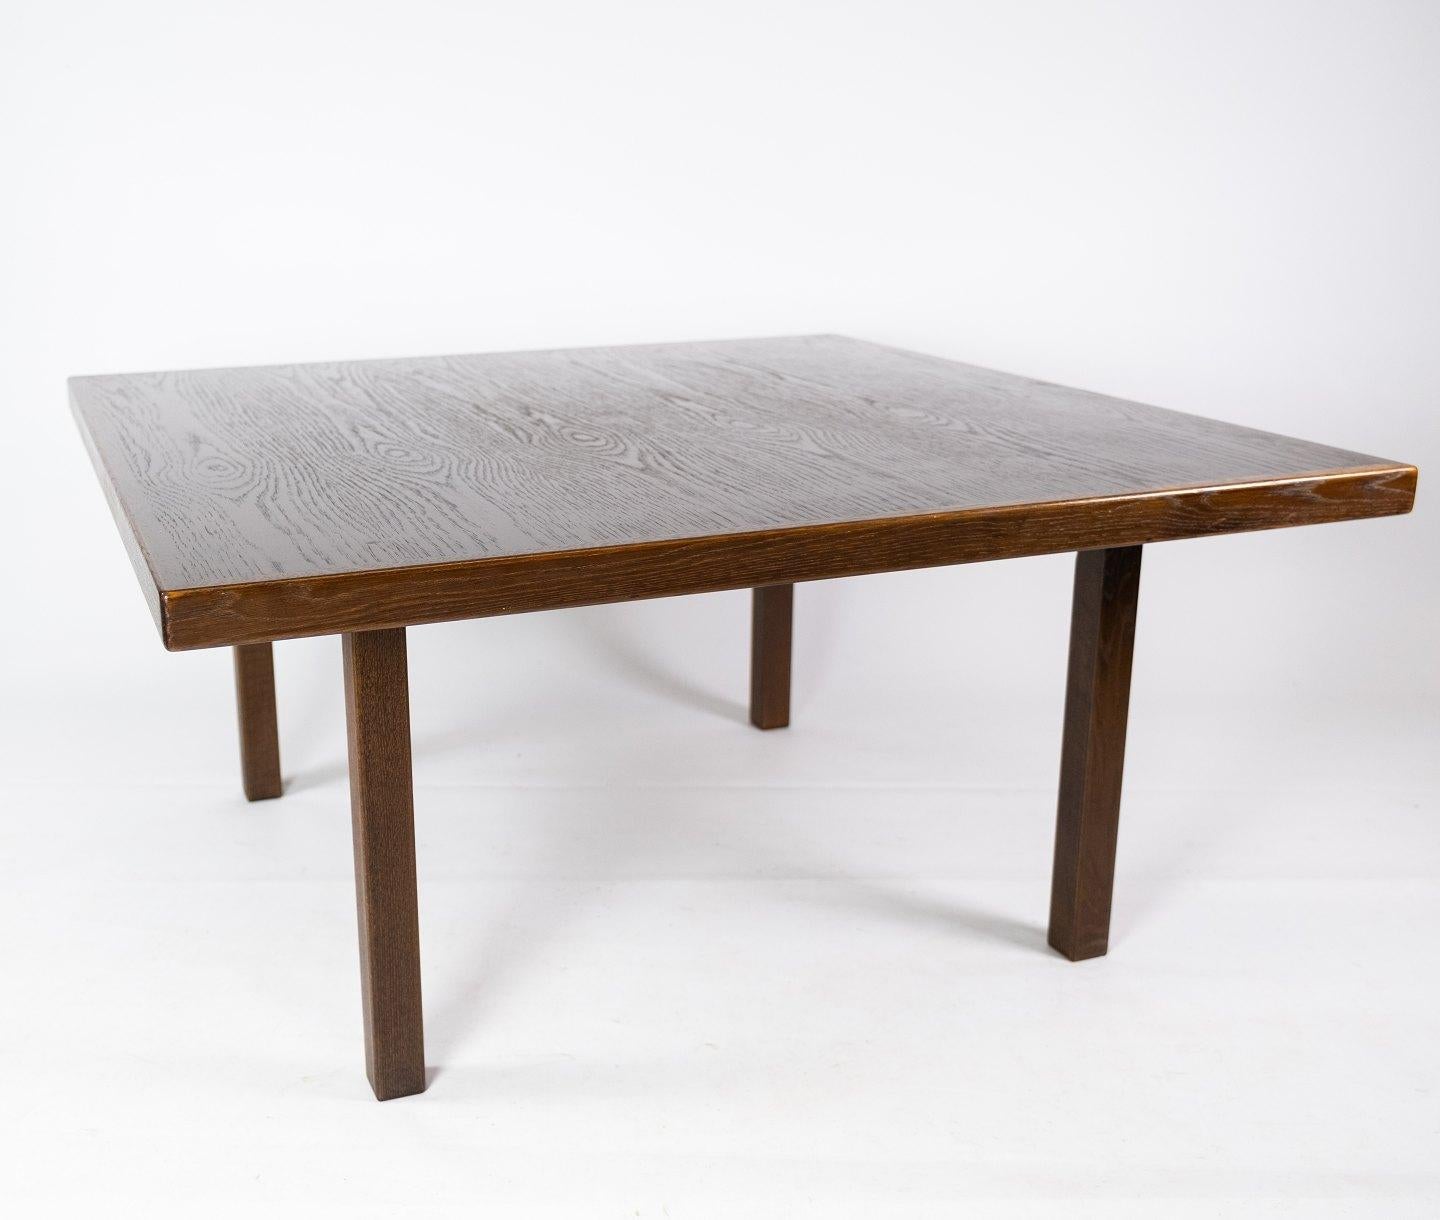 
Cette table basse de conception danoise datant des années 1960 respire l'élégance intemporelle et l'aspect pratique. Fabriqué en chêne foncé, il présente une finition riche et sophistiquée qui ajoute de la chaleur à tout espace de vie.

Avec ses